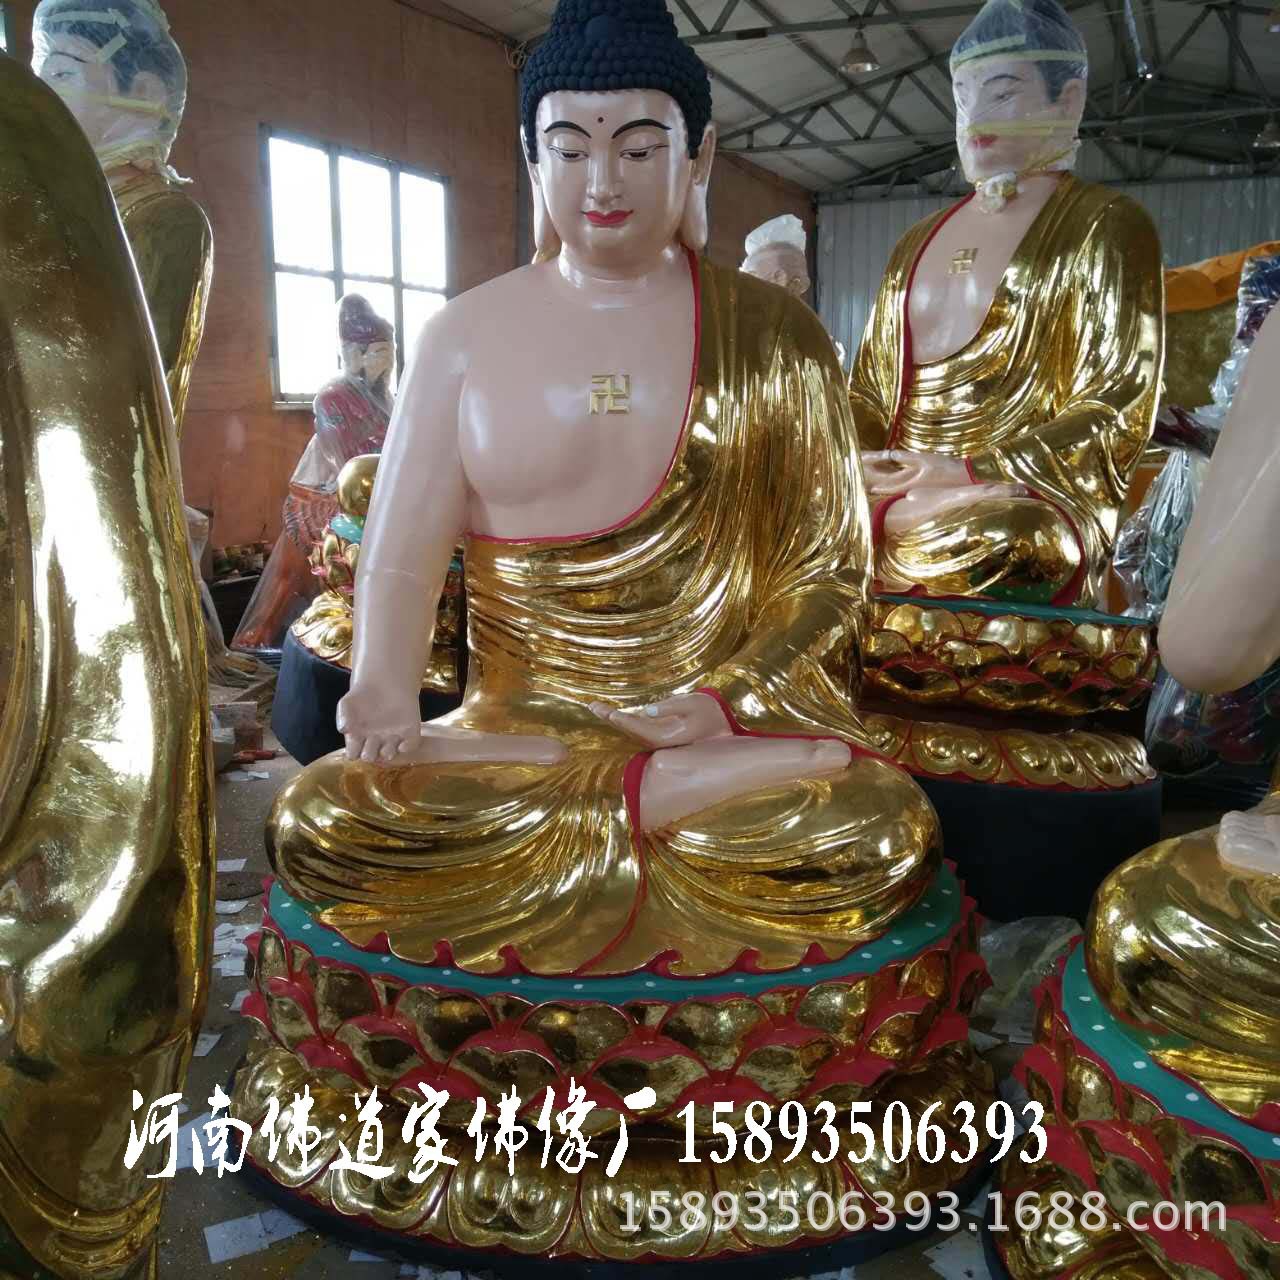 藏传佛教藏佛密宗佛像 百年传承供应佛教用品 河南大型佛像神像示例图1